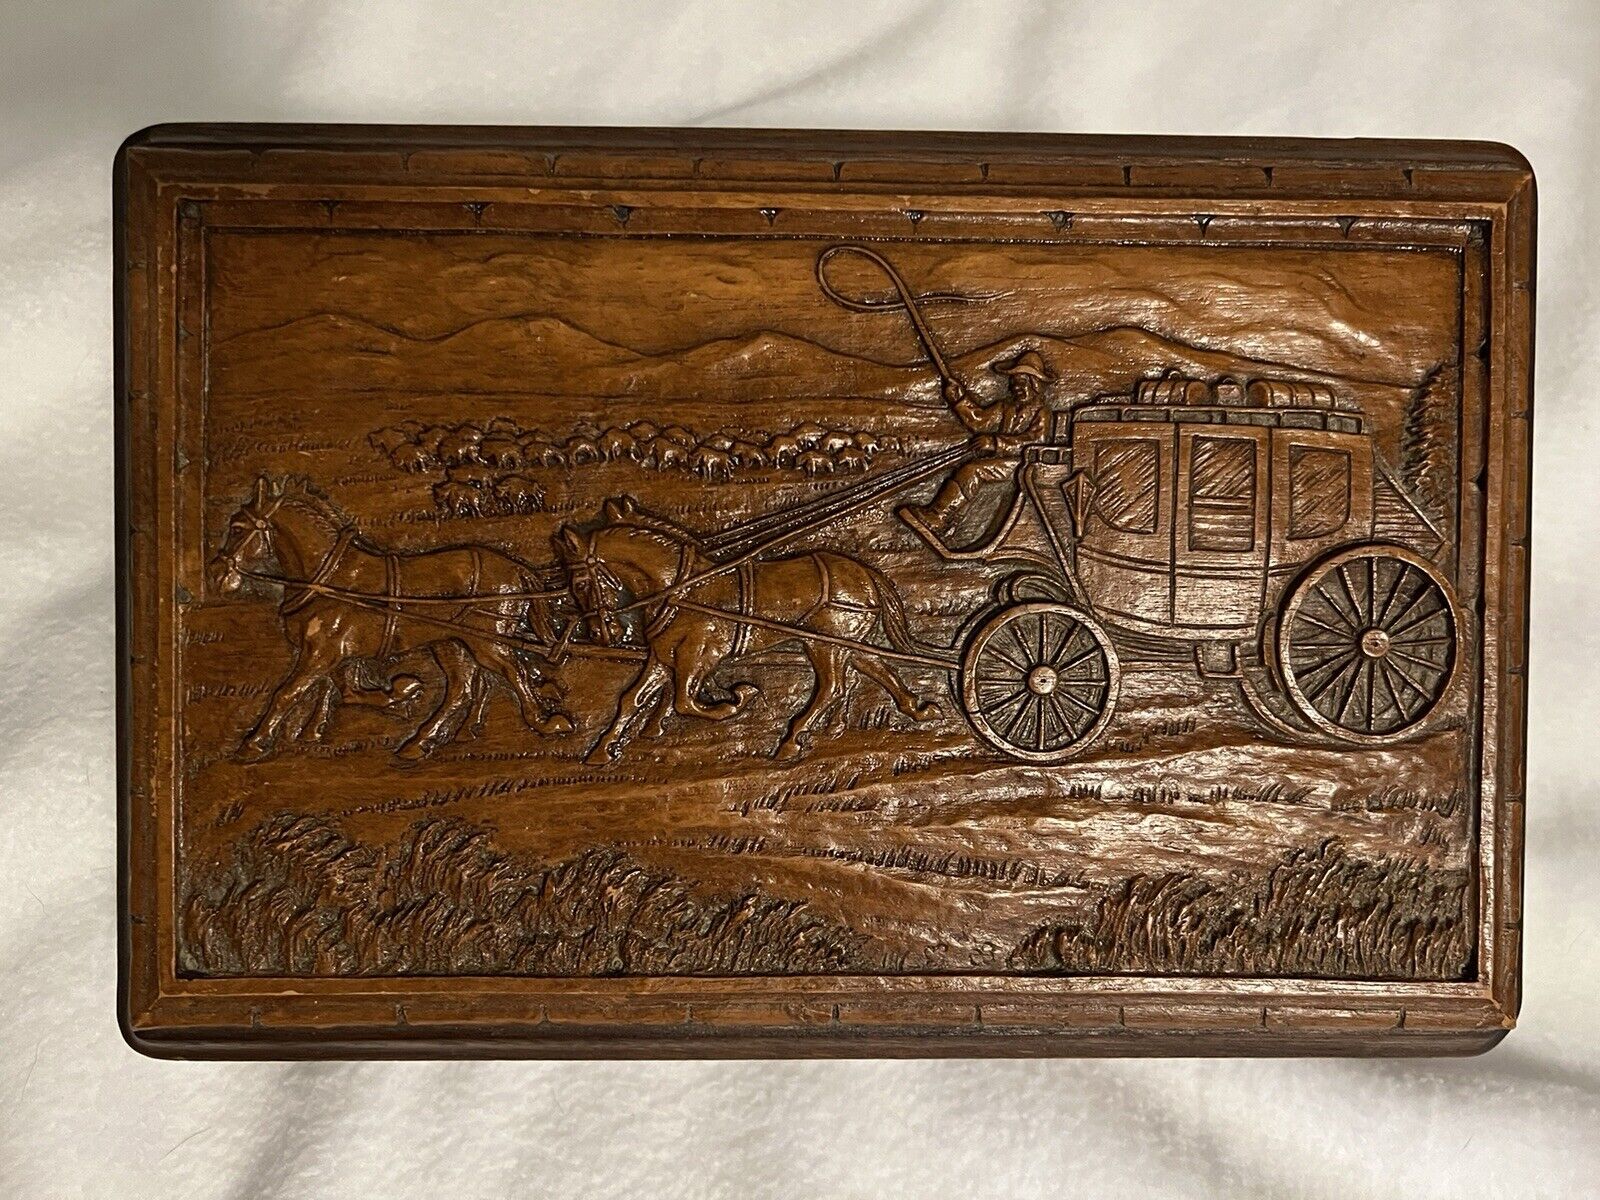 SALE Antique SyrocoWood  Cigar Trinket Jewelry Box Western Stagecoach Motif EUC